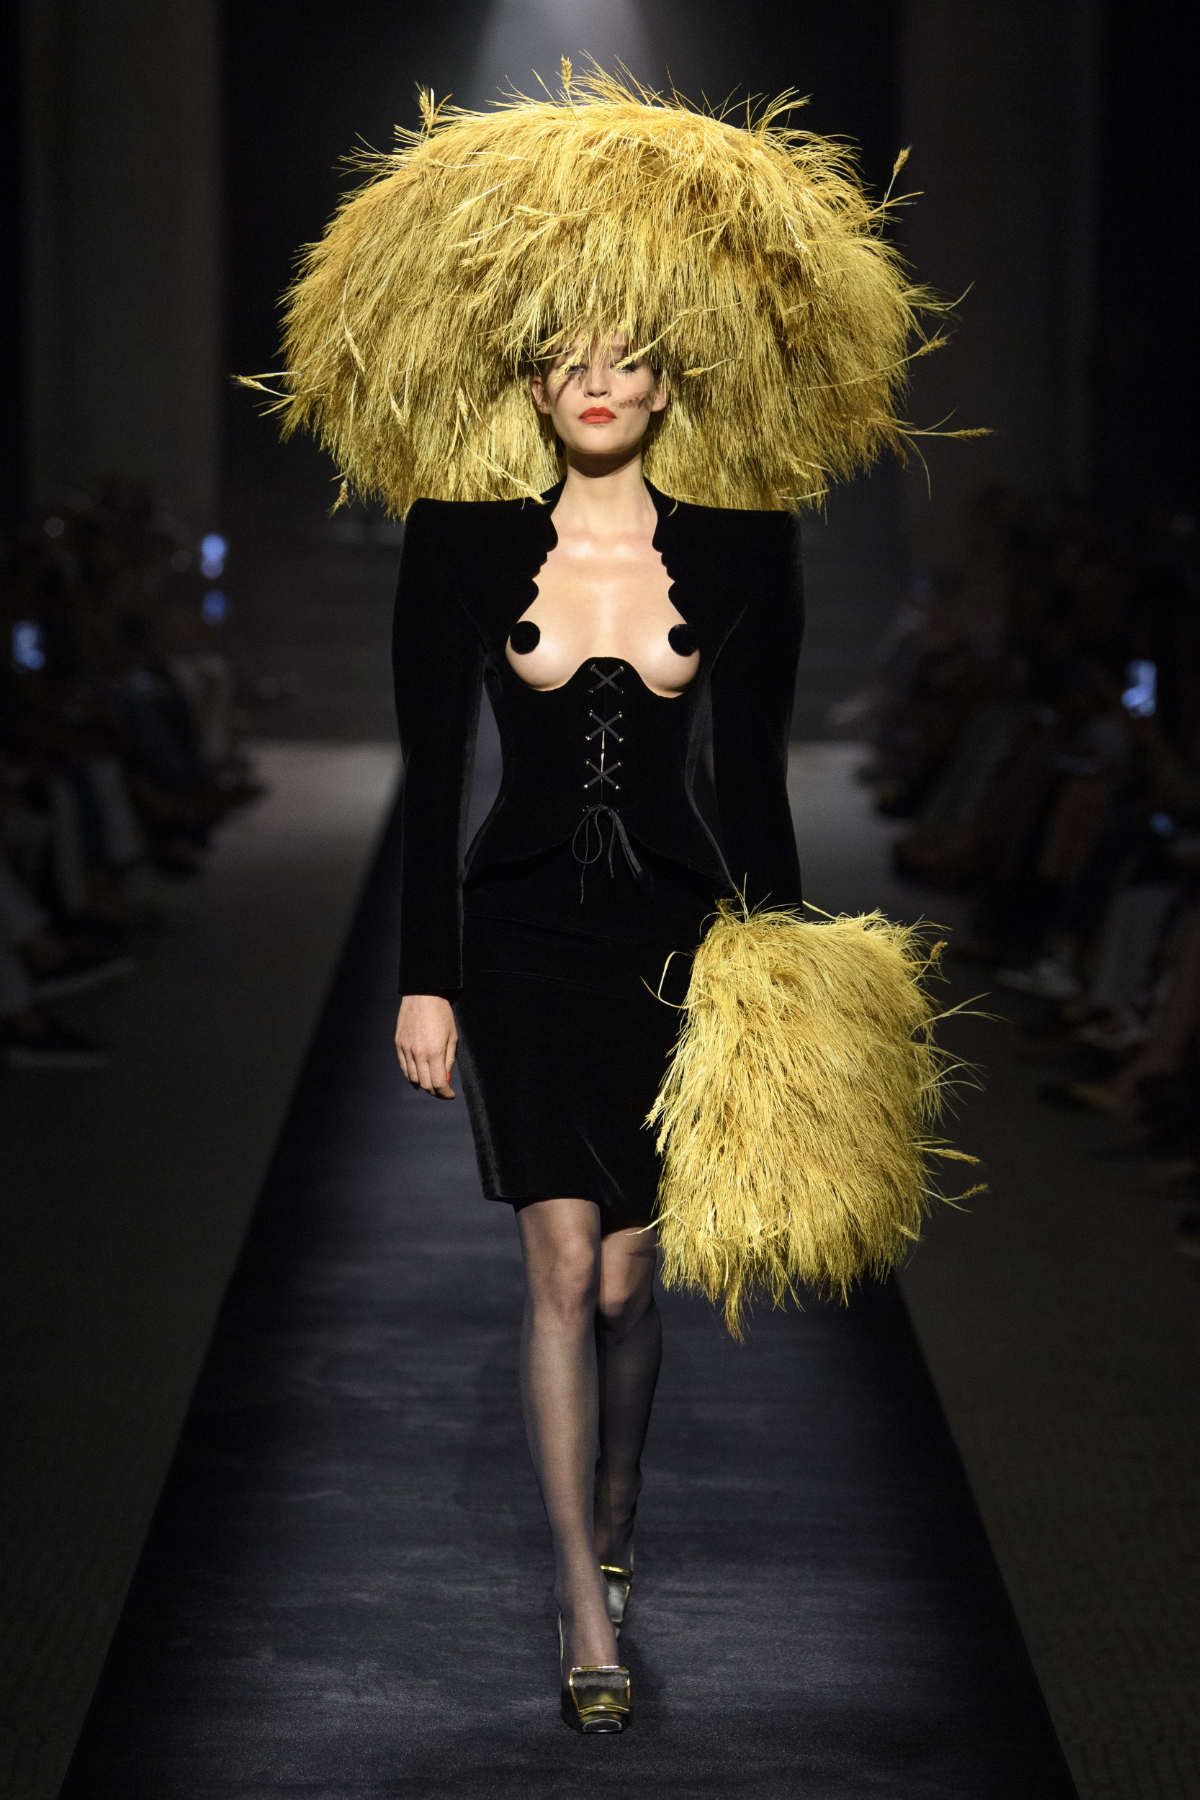 Schiaparelli Presents Its New Haute Couture Fall-Winter 2022/23 Collection: Born Again